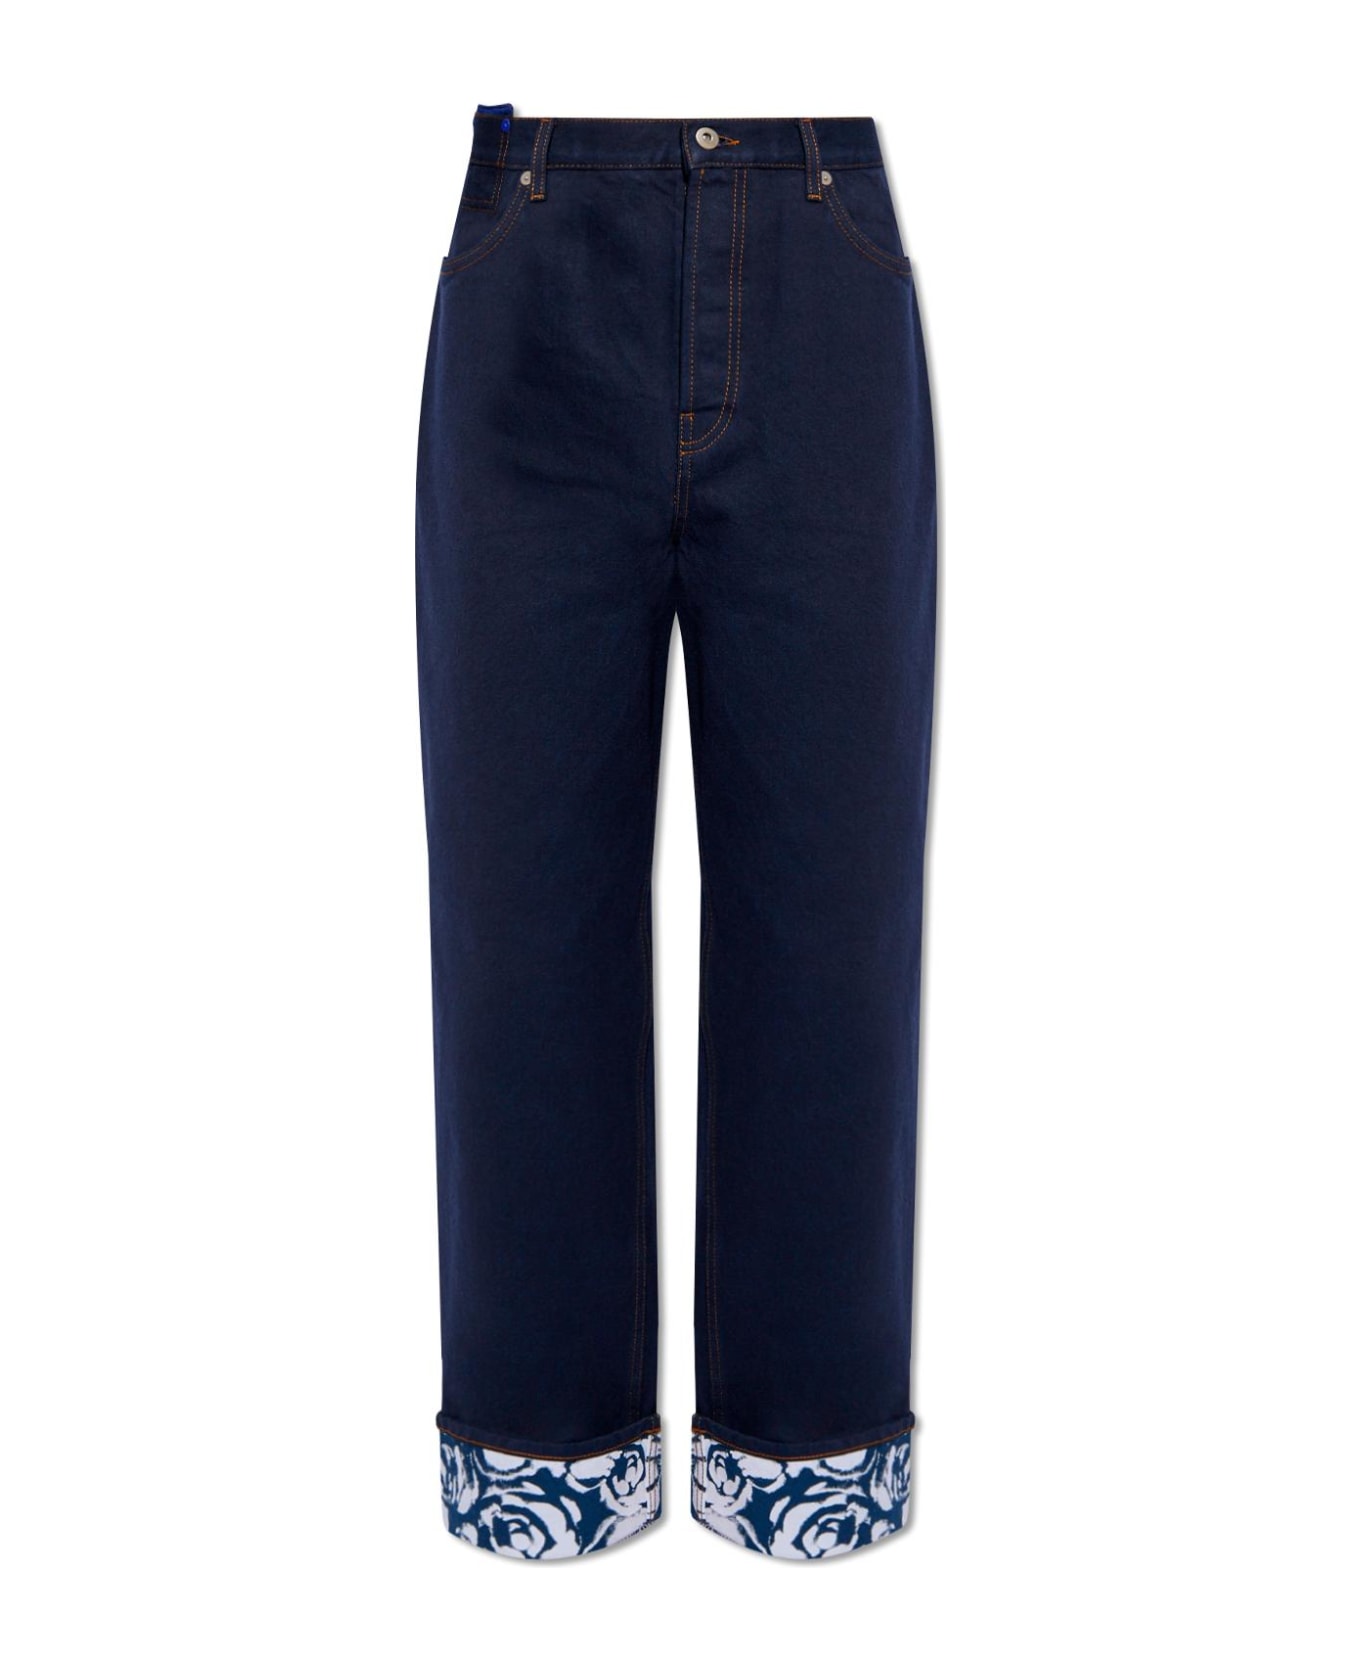 Burberry Jeans With Logo - Indigo Blue